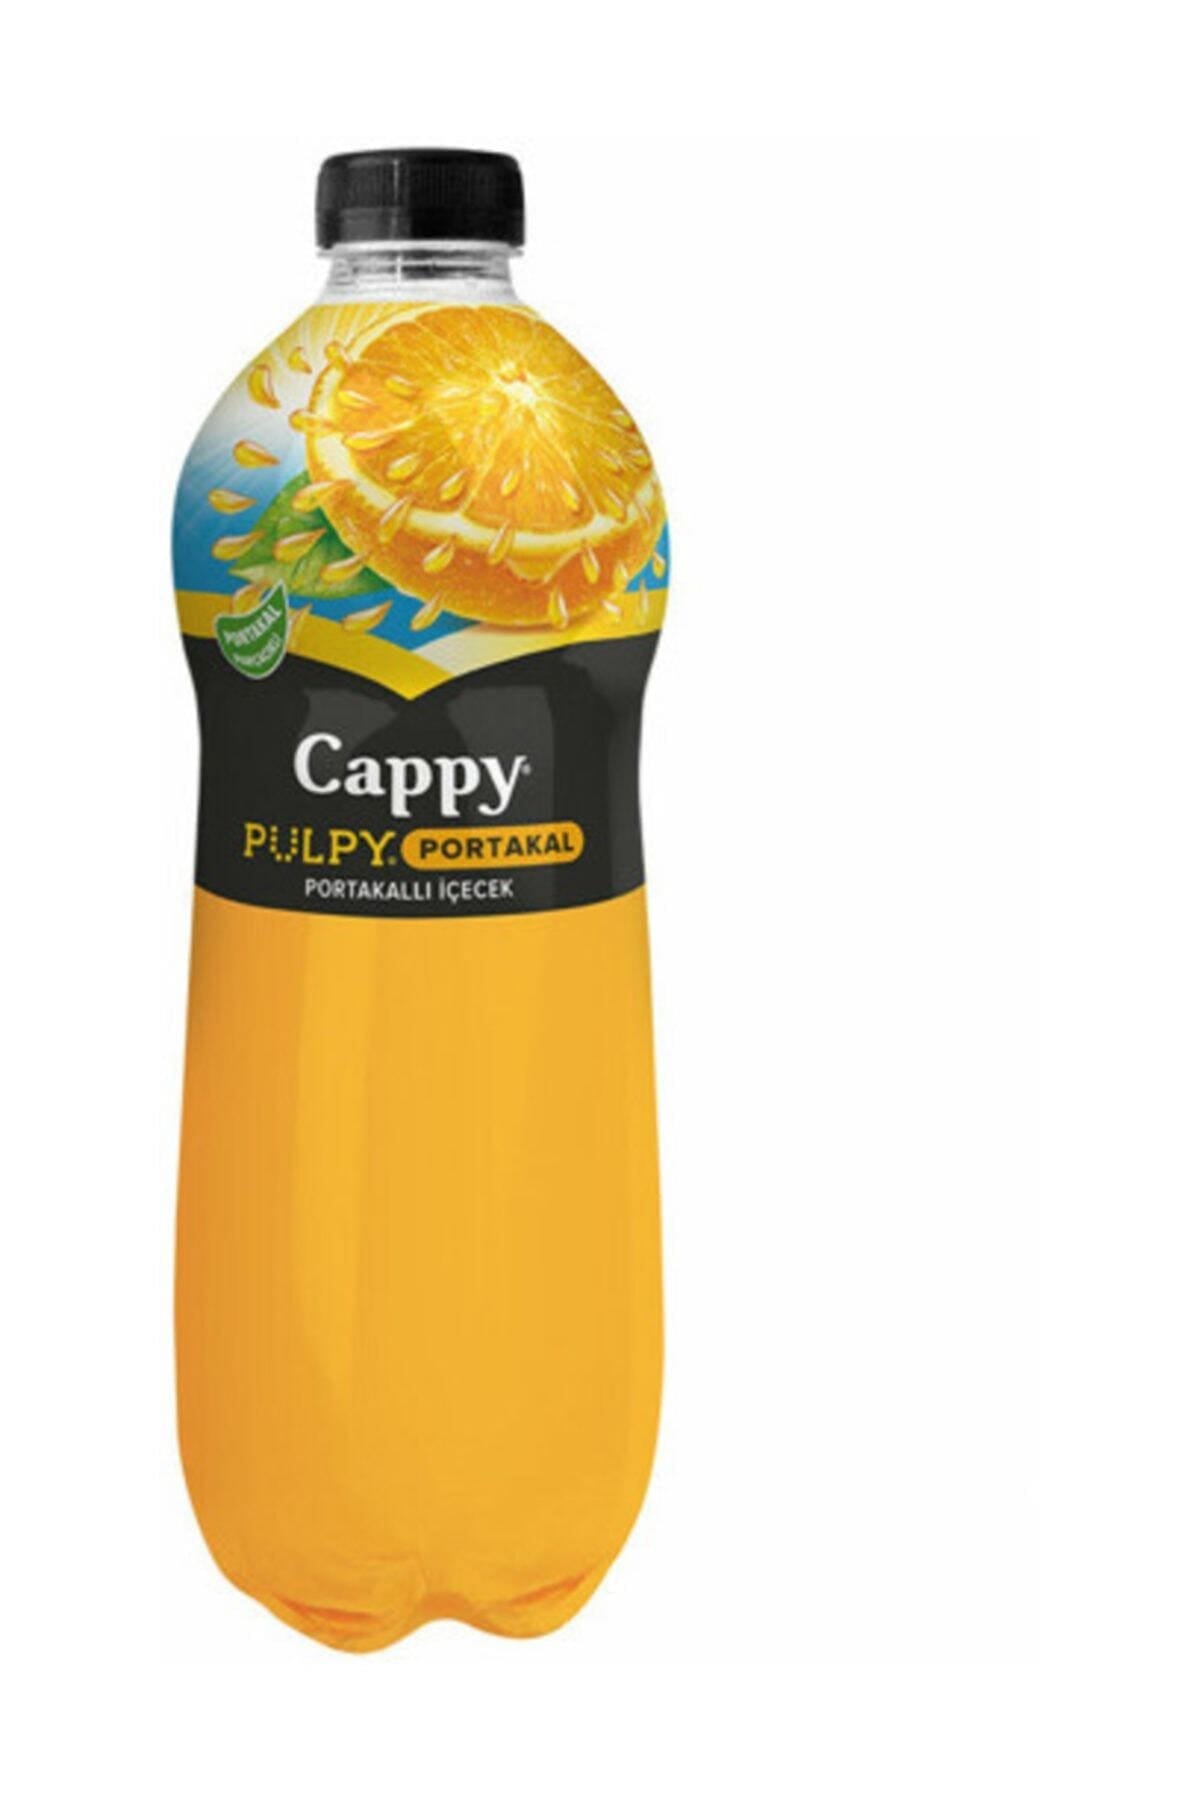 Cappy Fruit Juice Pulpy Orange Particle Plastik Bottle 1 L 